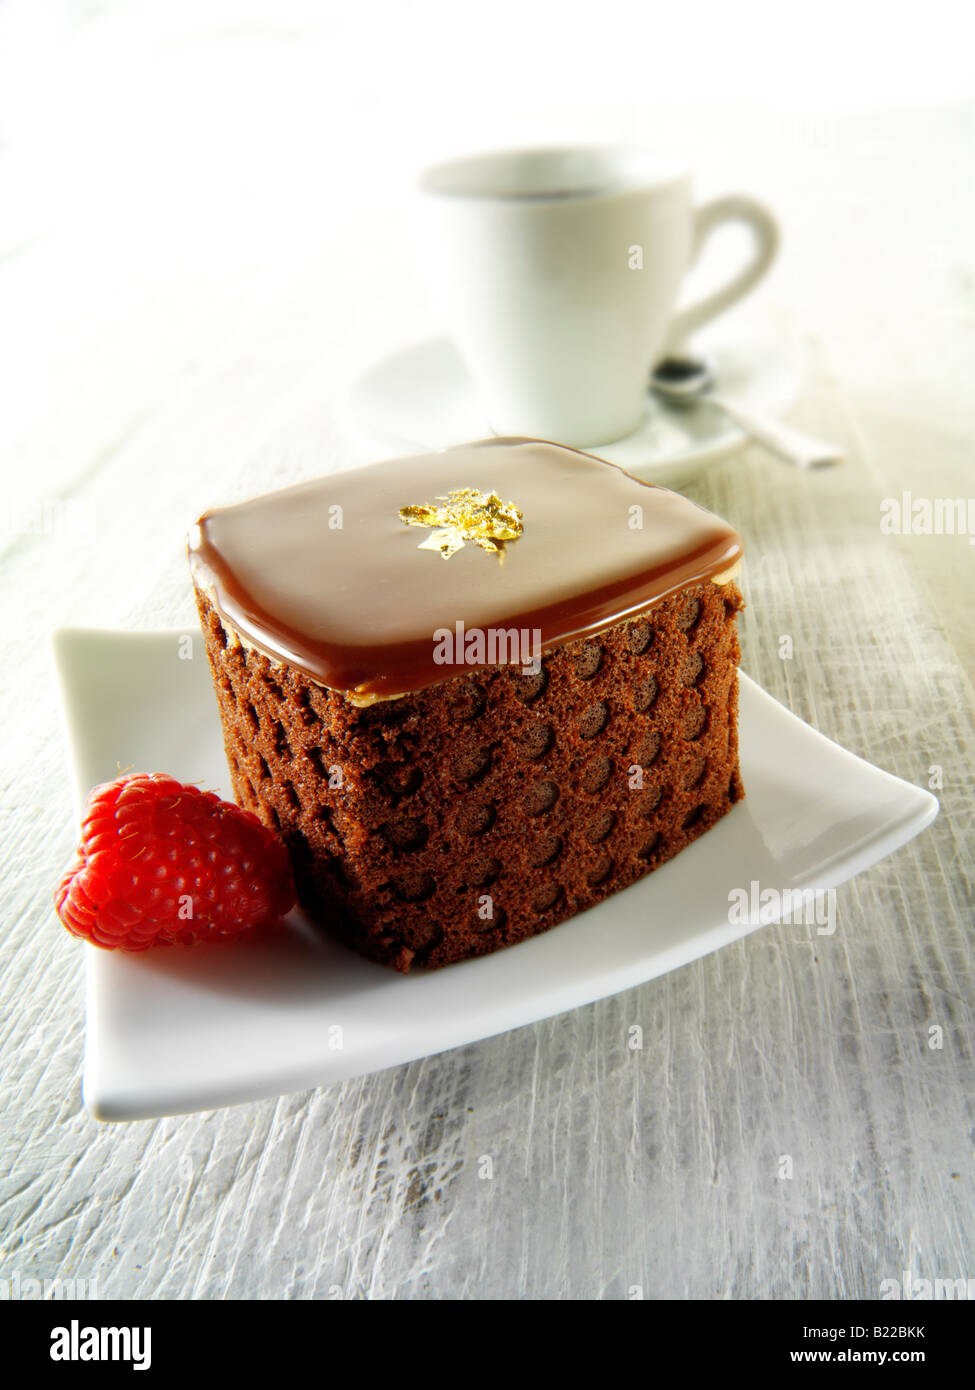 Una specialità di pasticceria fatta a mano ricca di dolci al cioccolato con caffè in un ambiente bianco Foto Stock